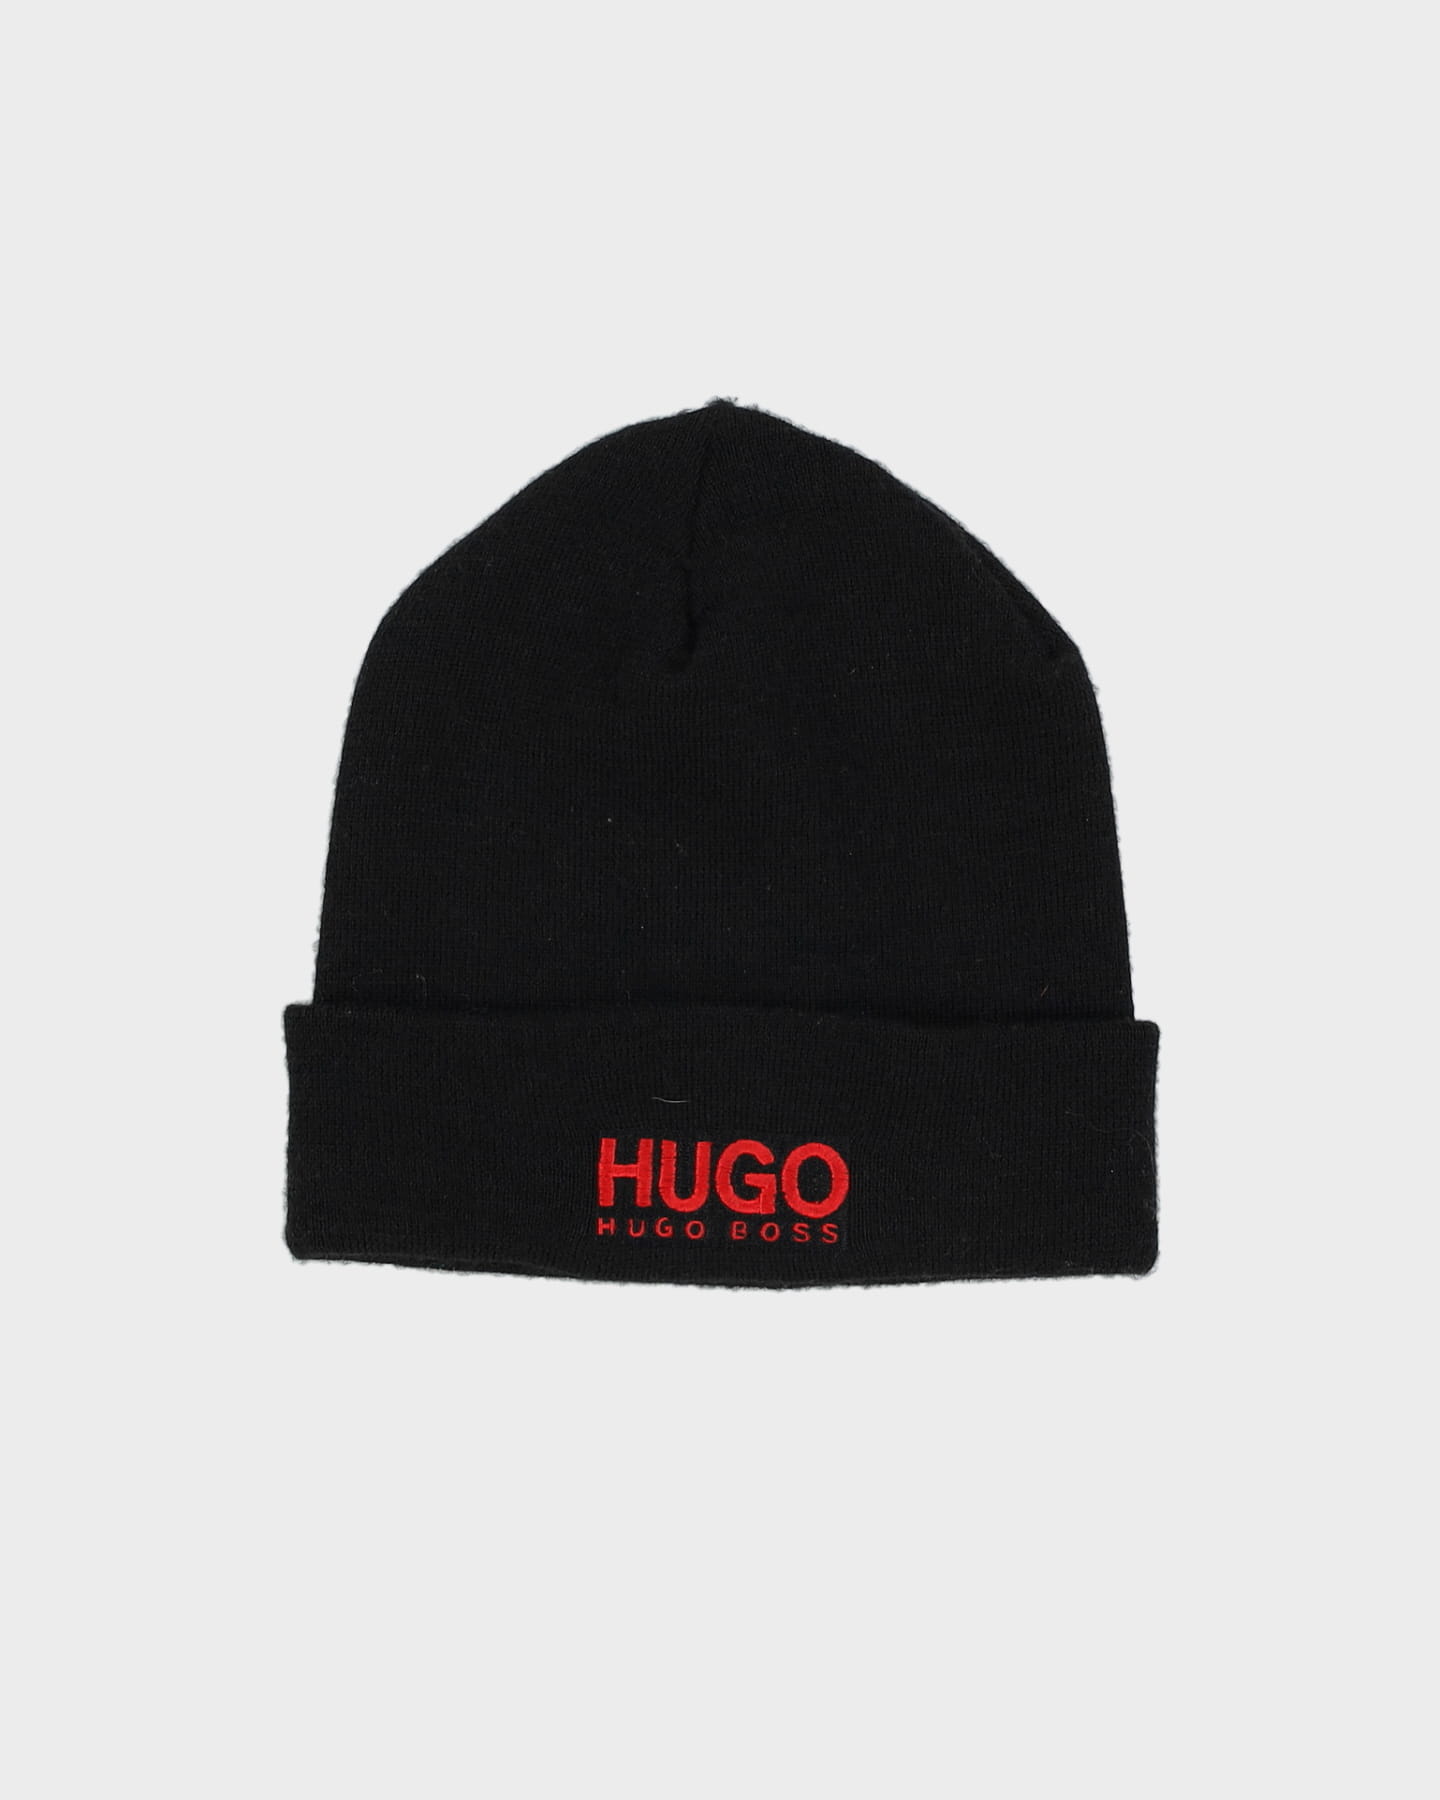 Hugo Boss Black / Red Beanie